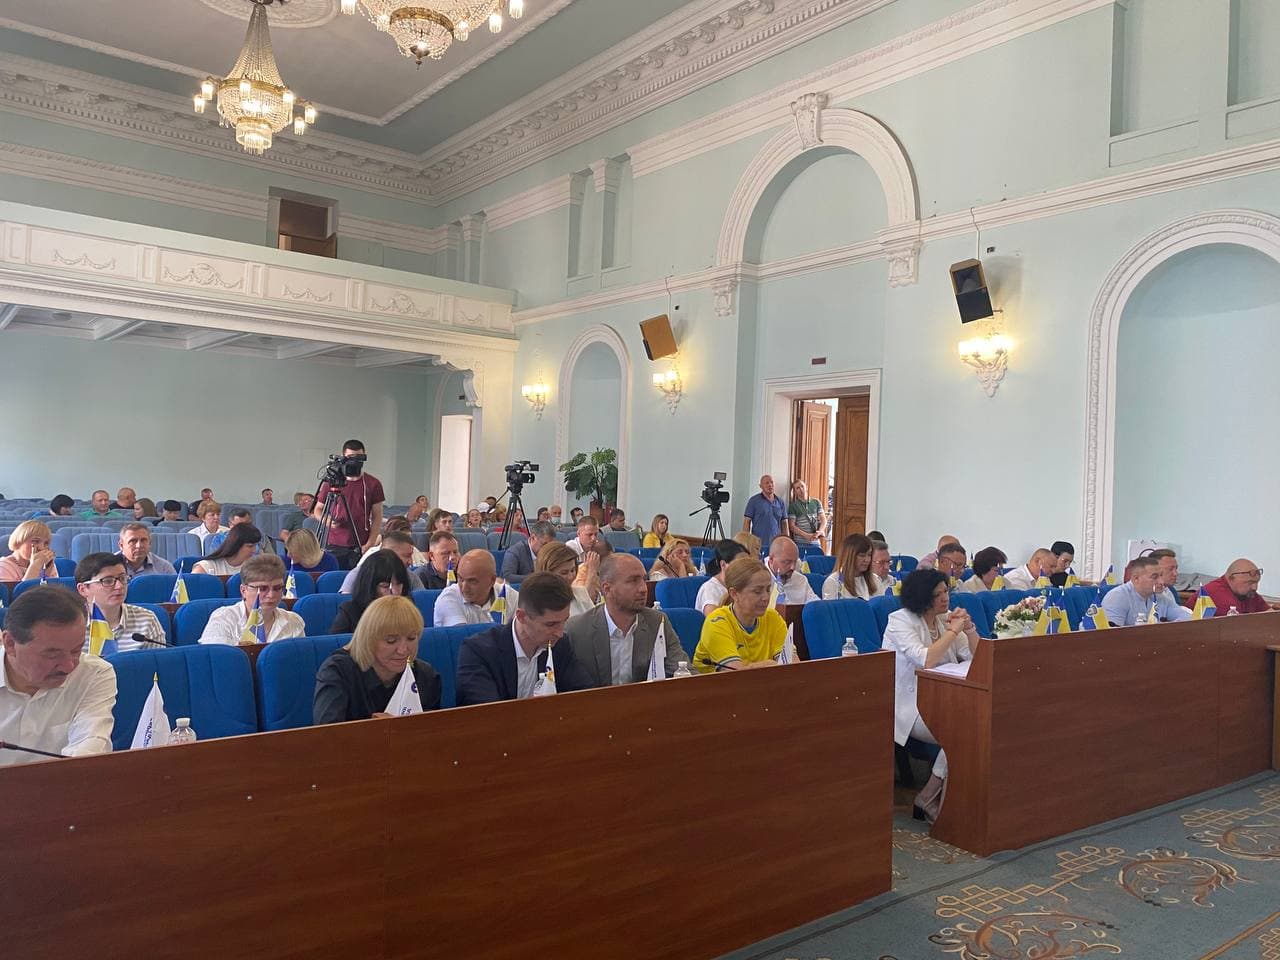 8 млн гривень – на реалізацію концепції «Нова українська школа» в житомирській громаді